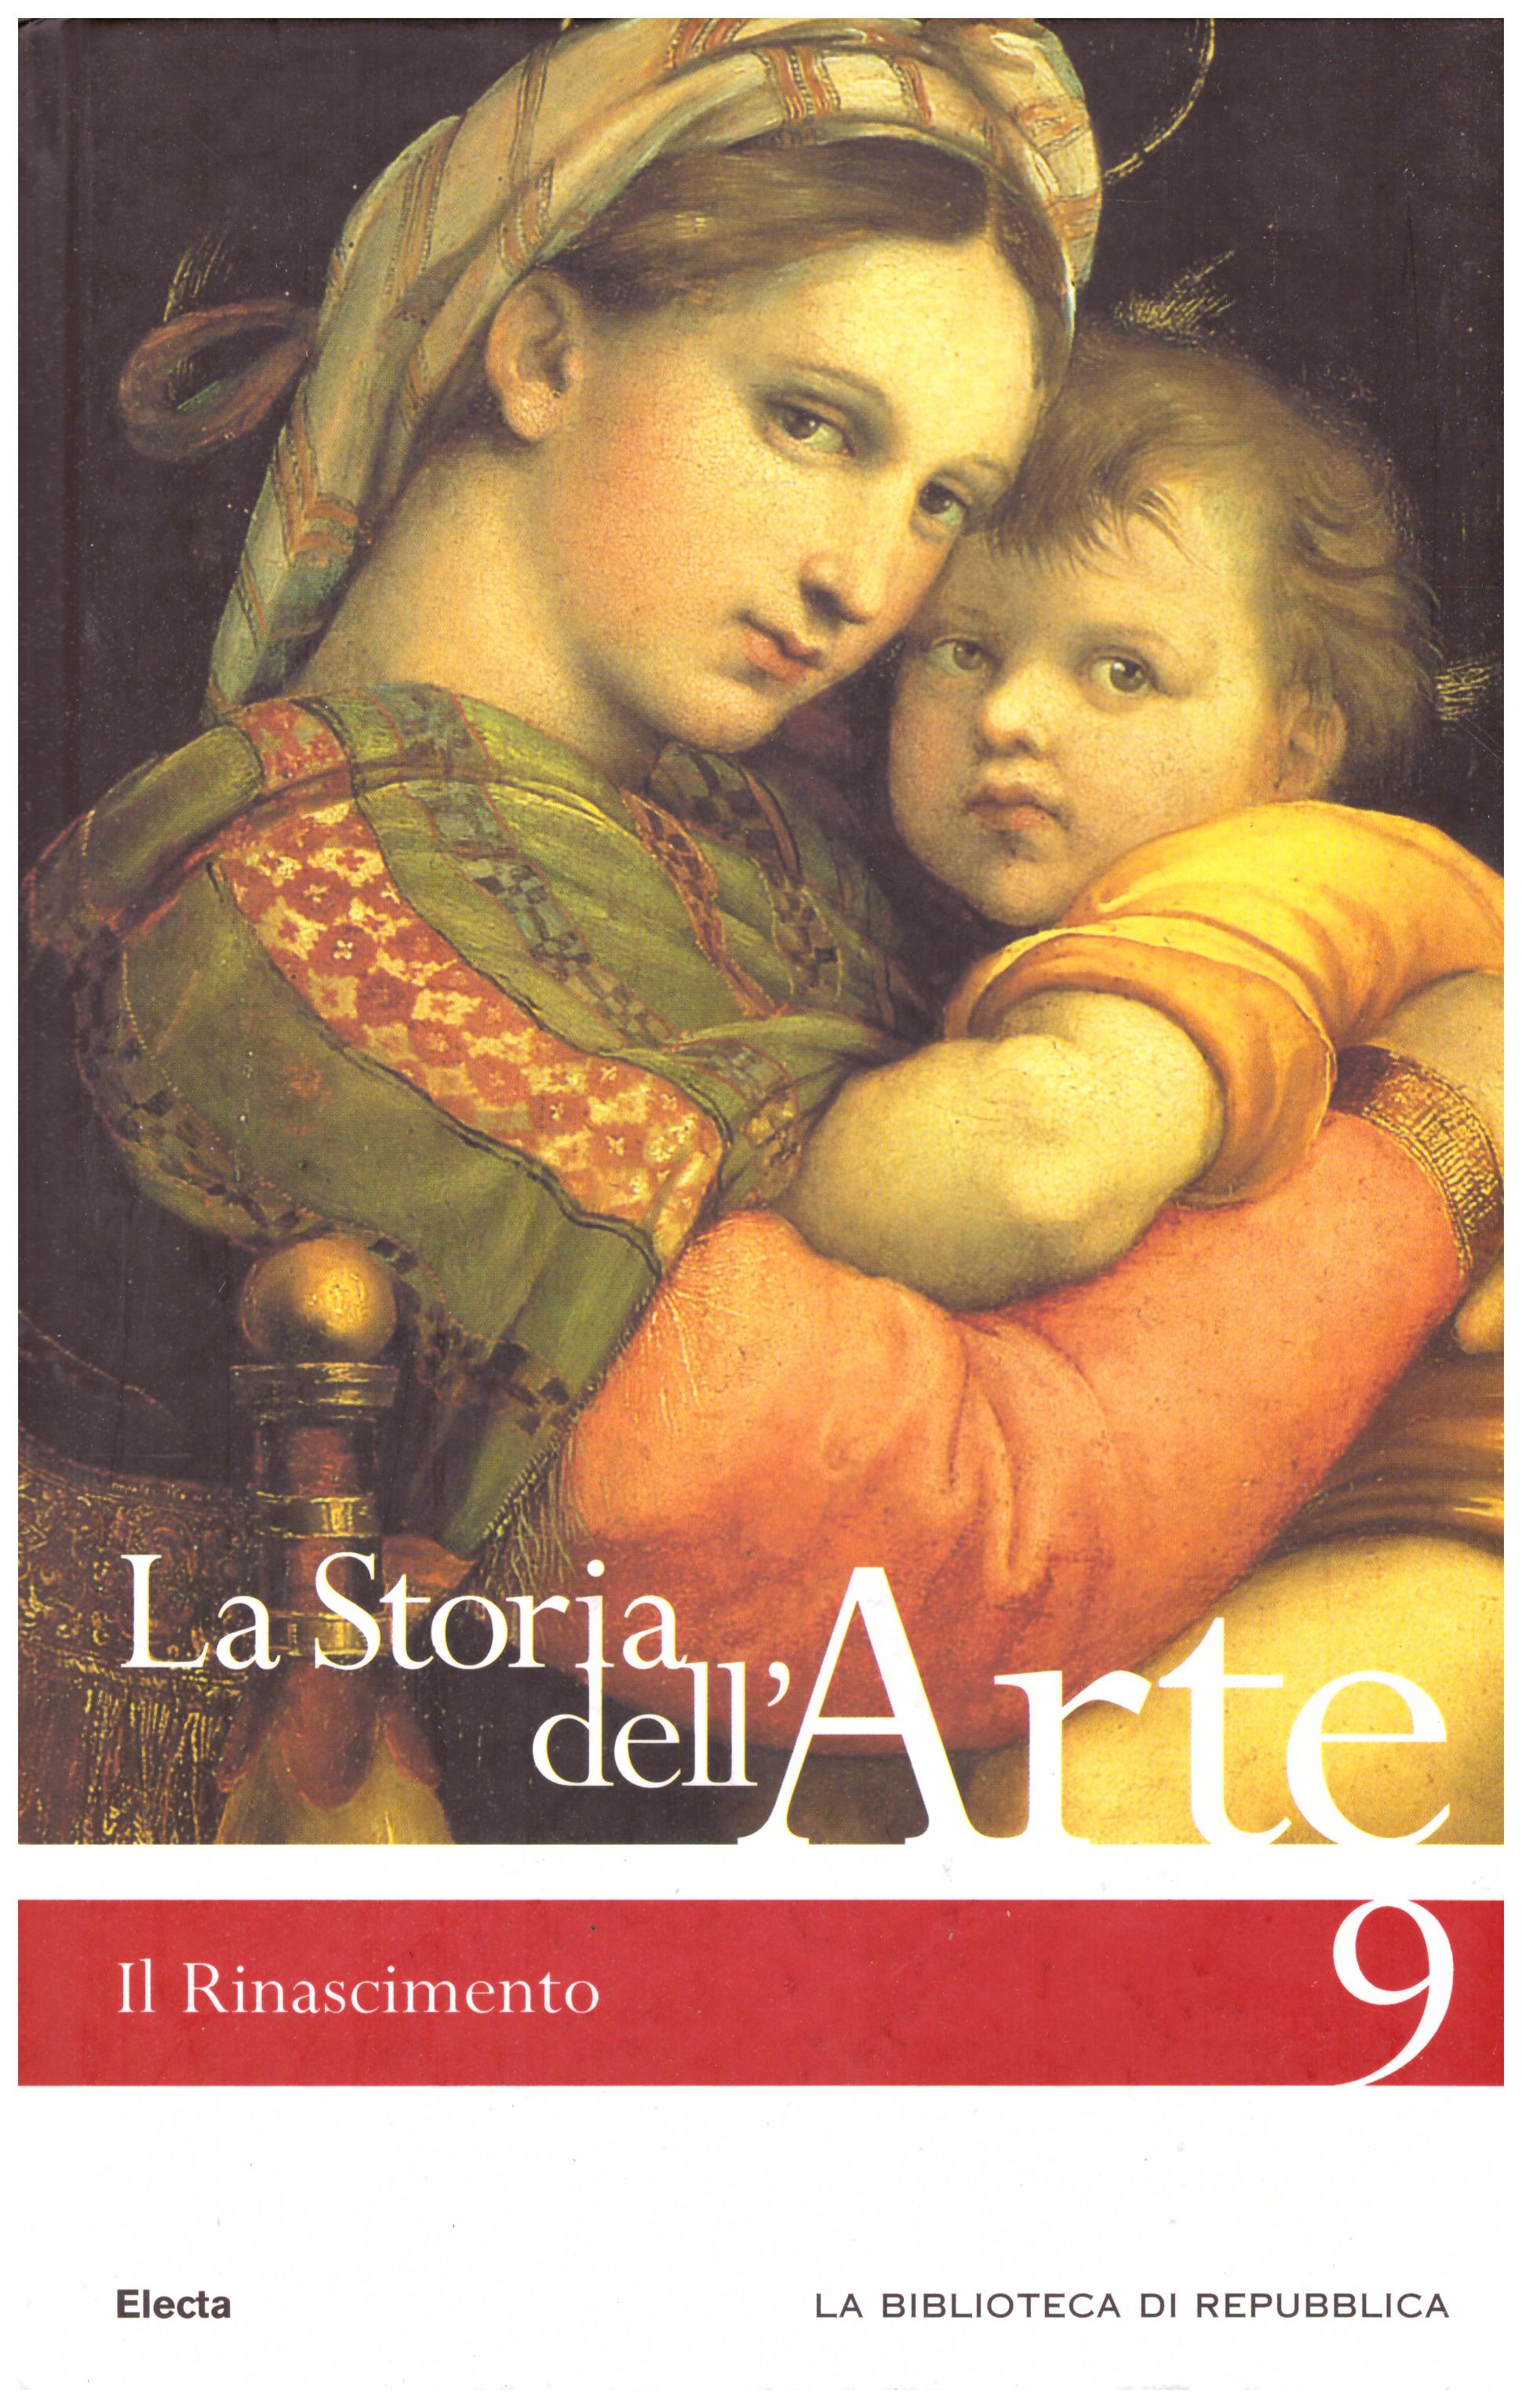 Titolo: La storia dell'arte n.9 Il Rinascimento  Autore : AA.VV.  Editore: Mondadori Electa biblioteca di Repubblica 2006